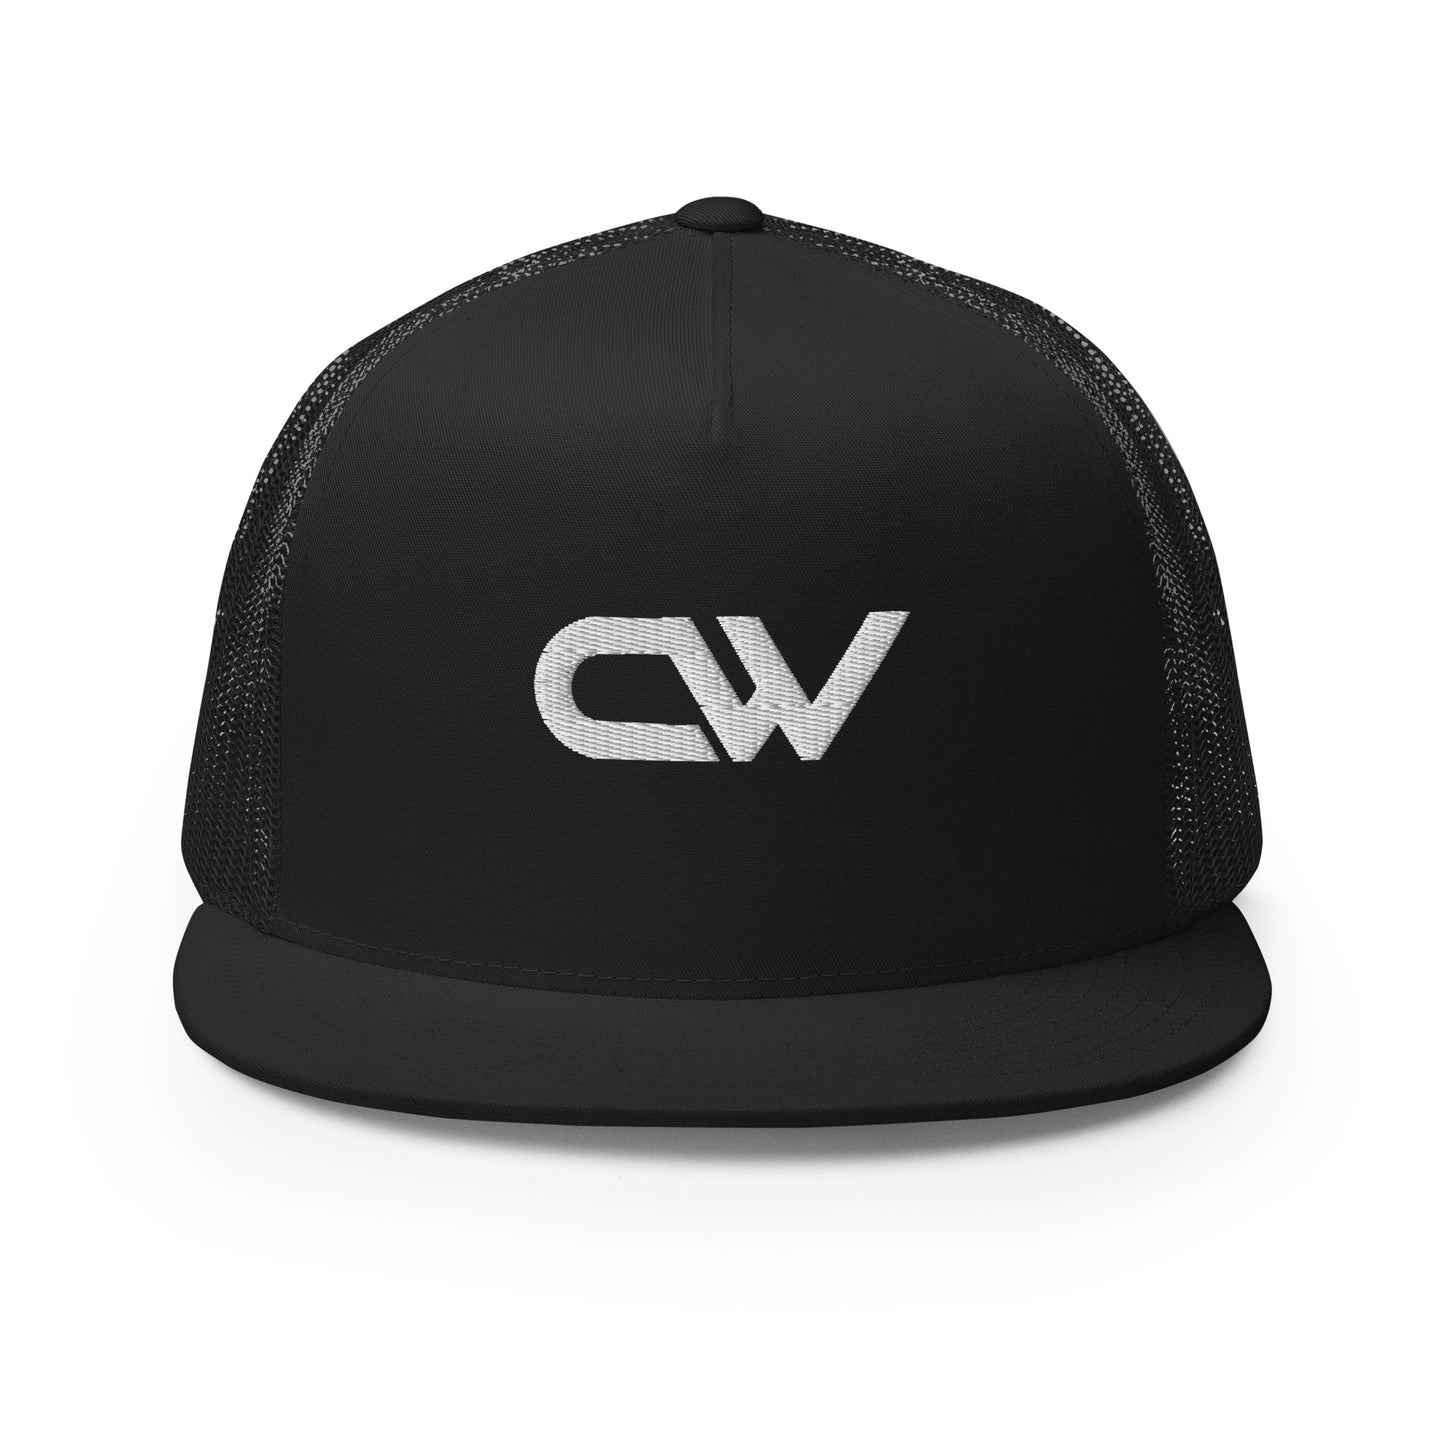 Carson Walls "CW" Trucker Cap